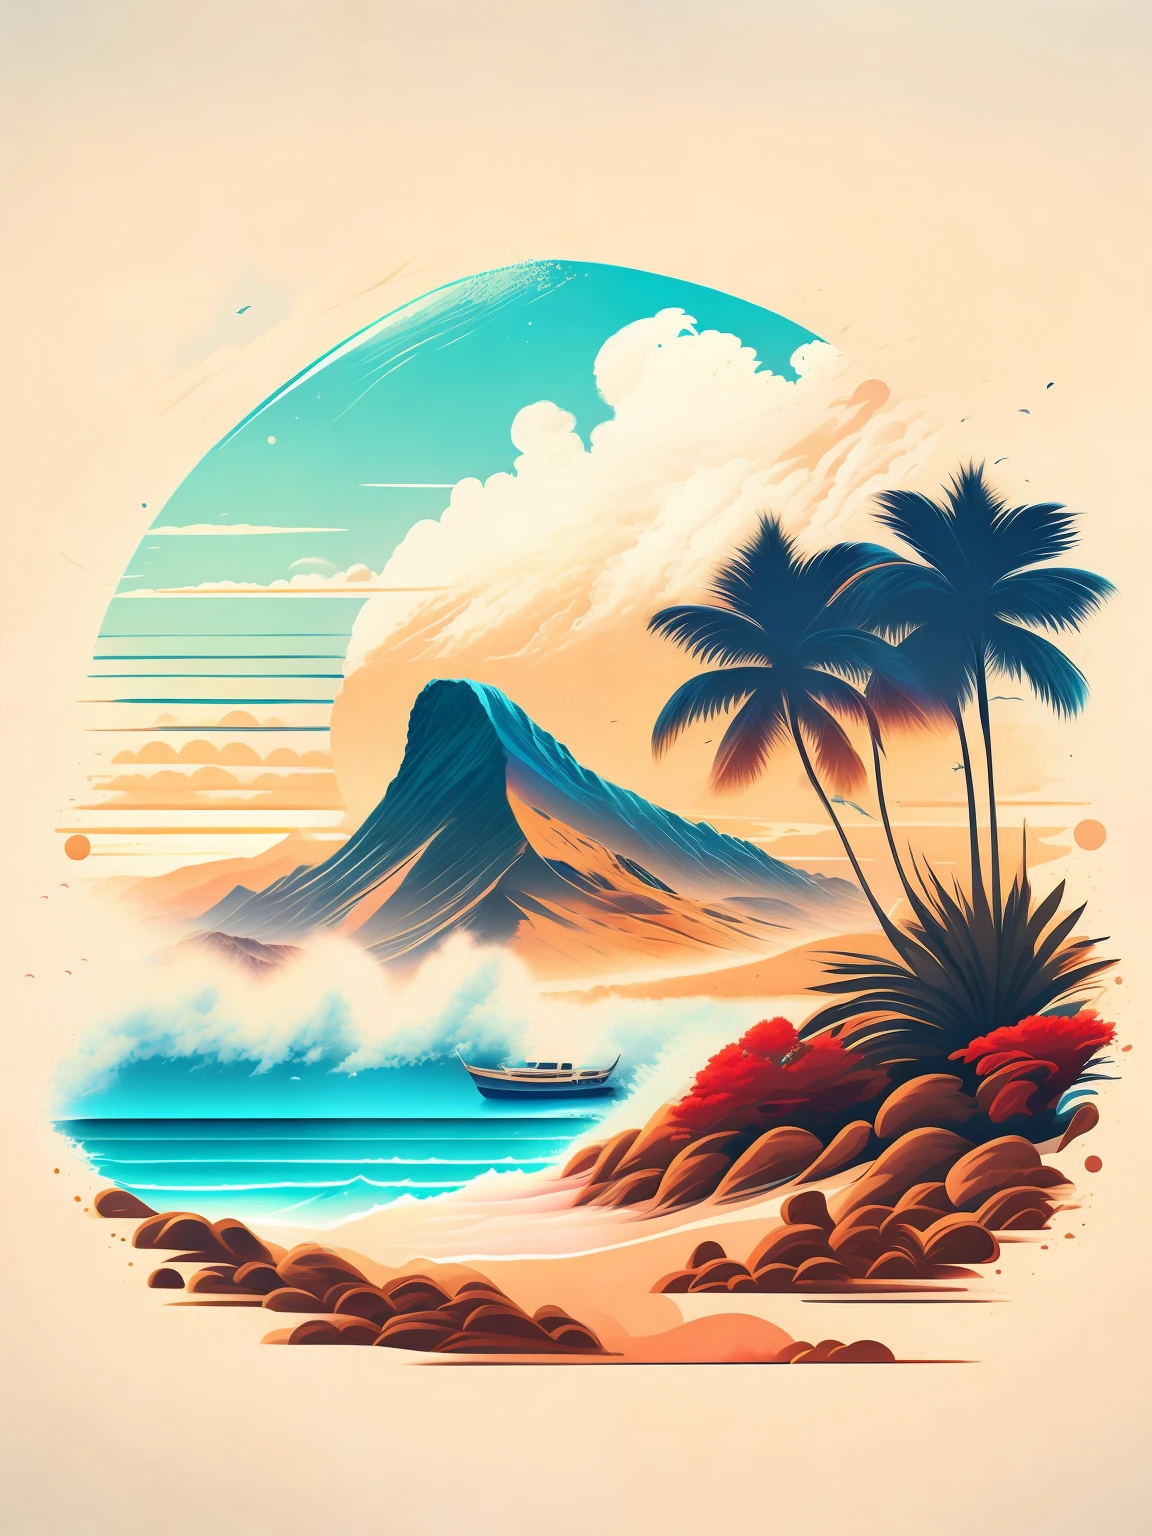 Ein Strand in einer Sommerlandschaft, T-Shirt-Design, mitten auf der Reise, Vektorgrafiken, Surfmode